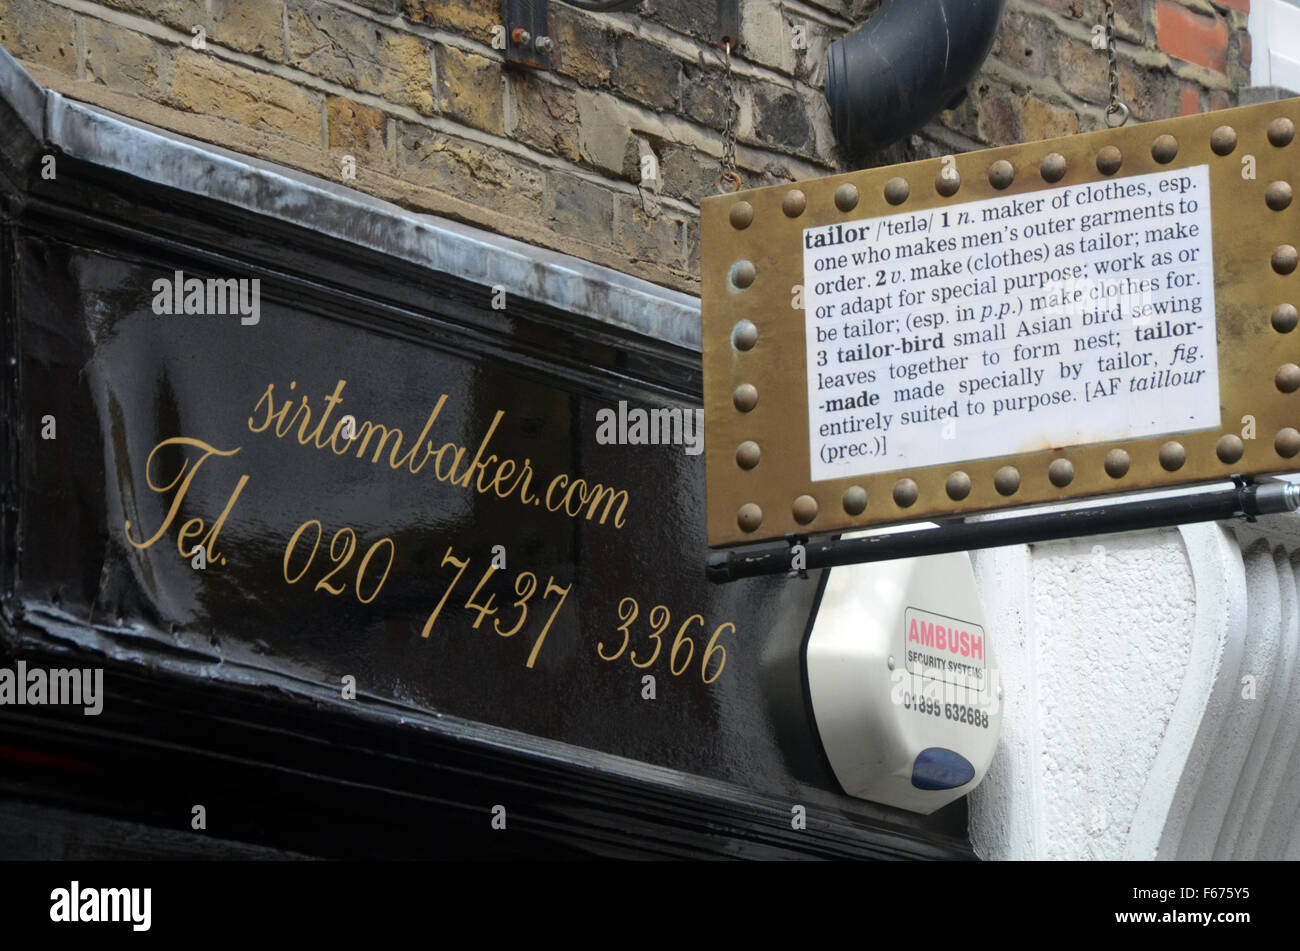 Londres, Royaume-Uni, 30 juin 2015, Sir Tom Baker, atelier de couture sur mesure en 4 D'Arblay St, Soho W1F 8DJ. Banque D'Images